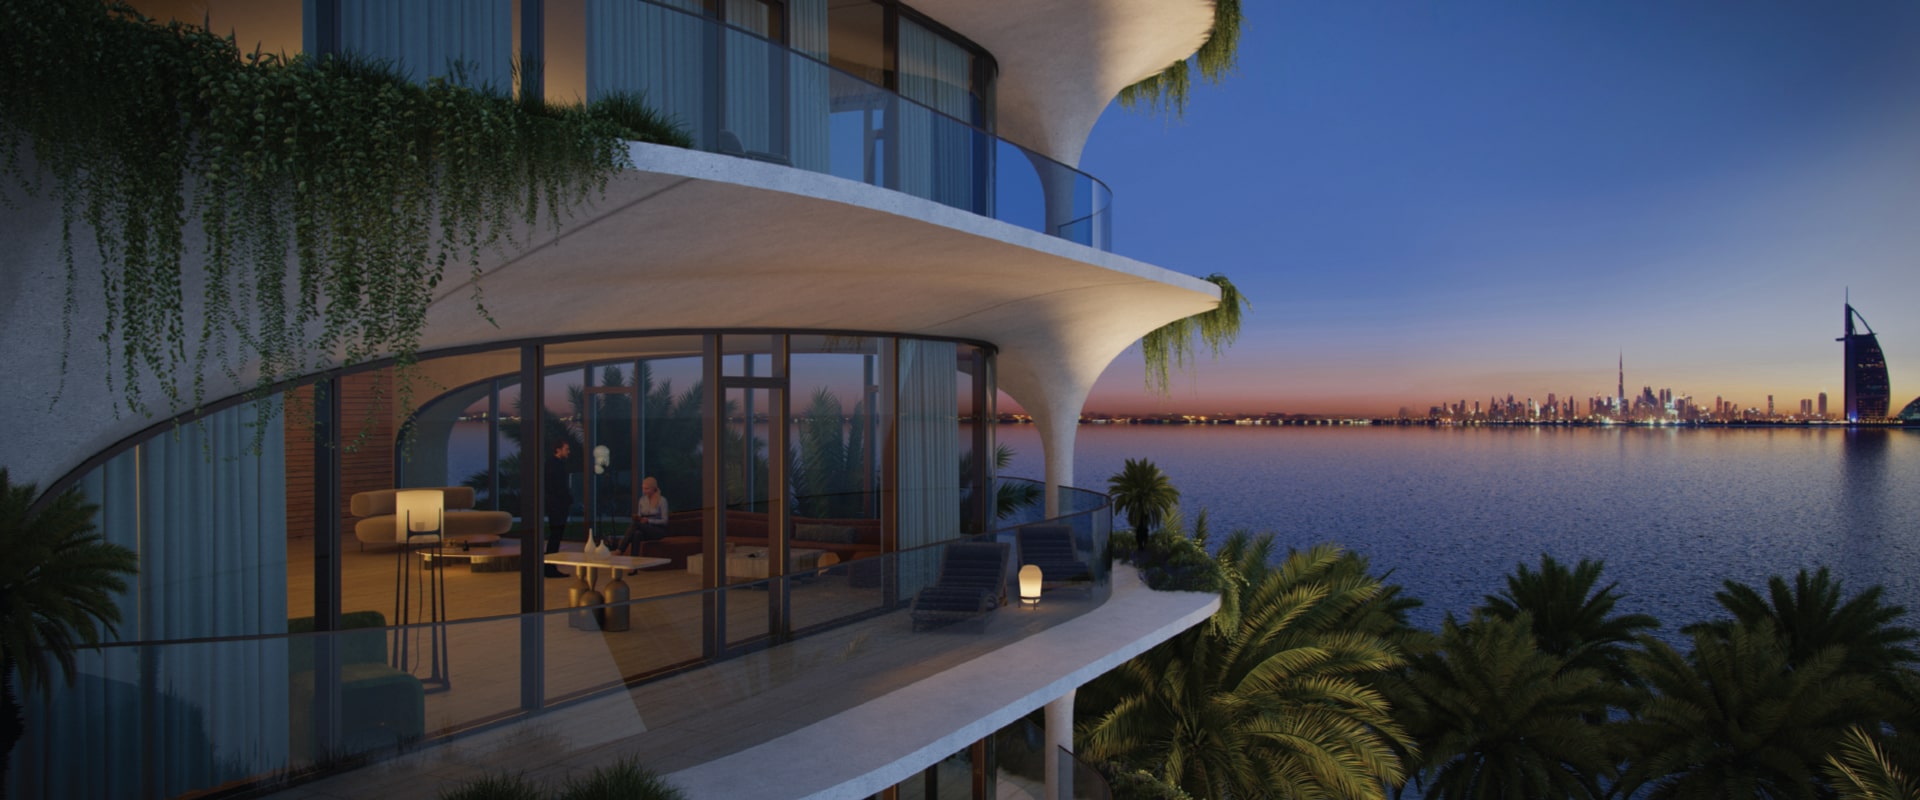 OCEAN HOUSE in Palm Jumeirah, Dubai by Elington